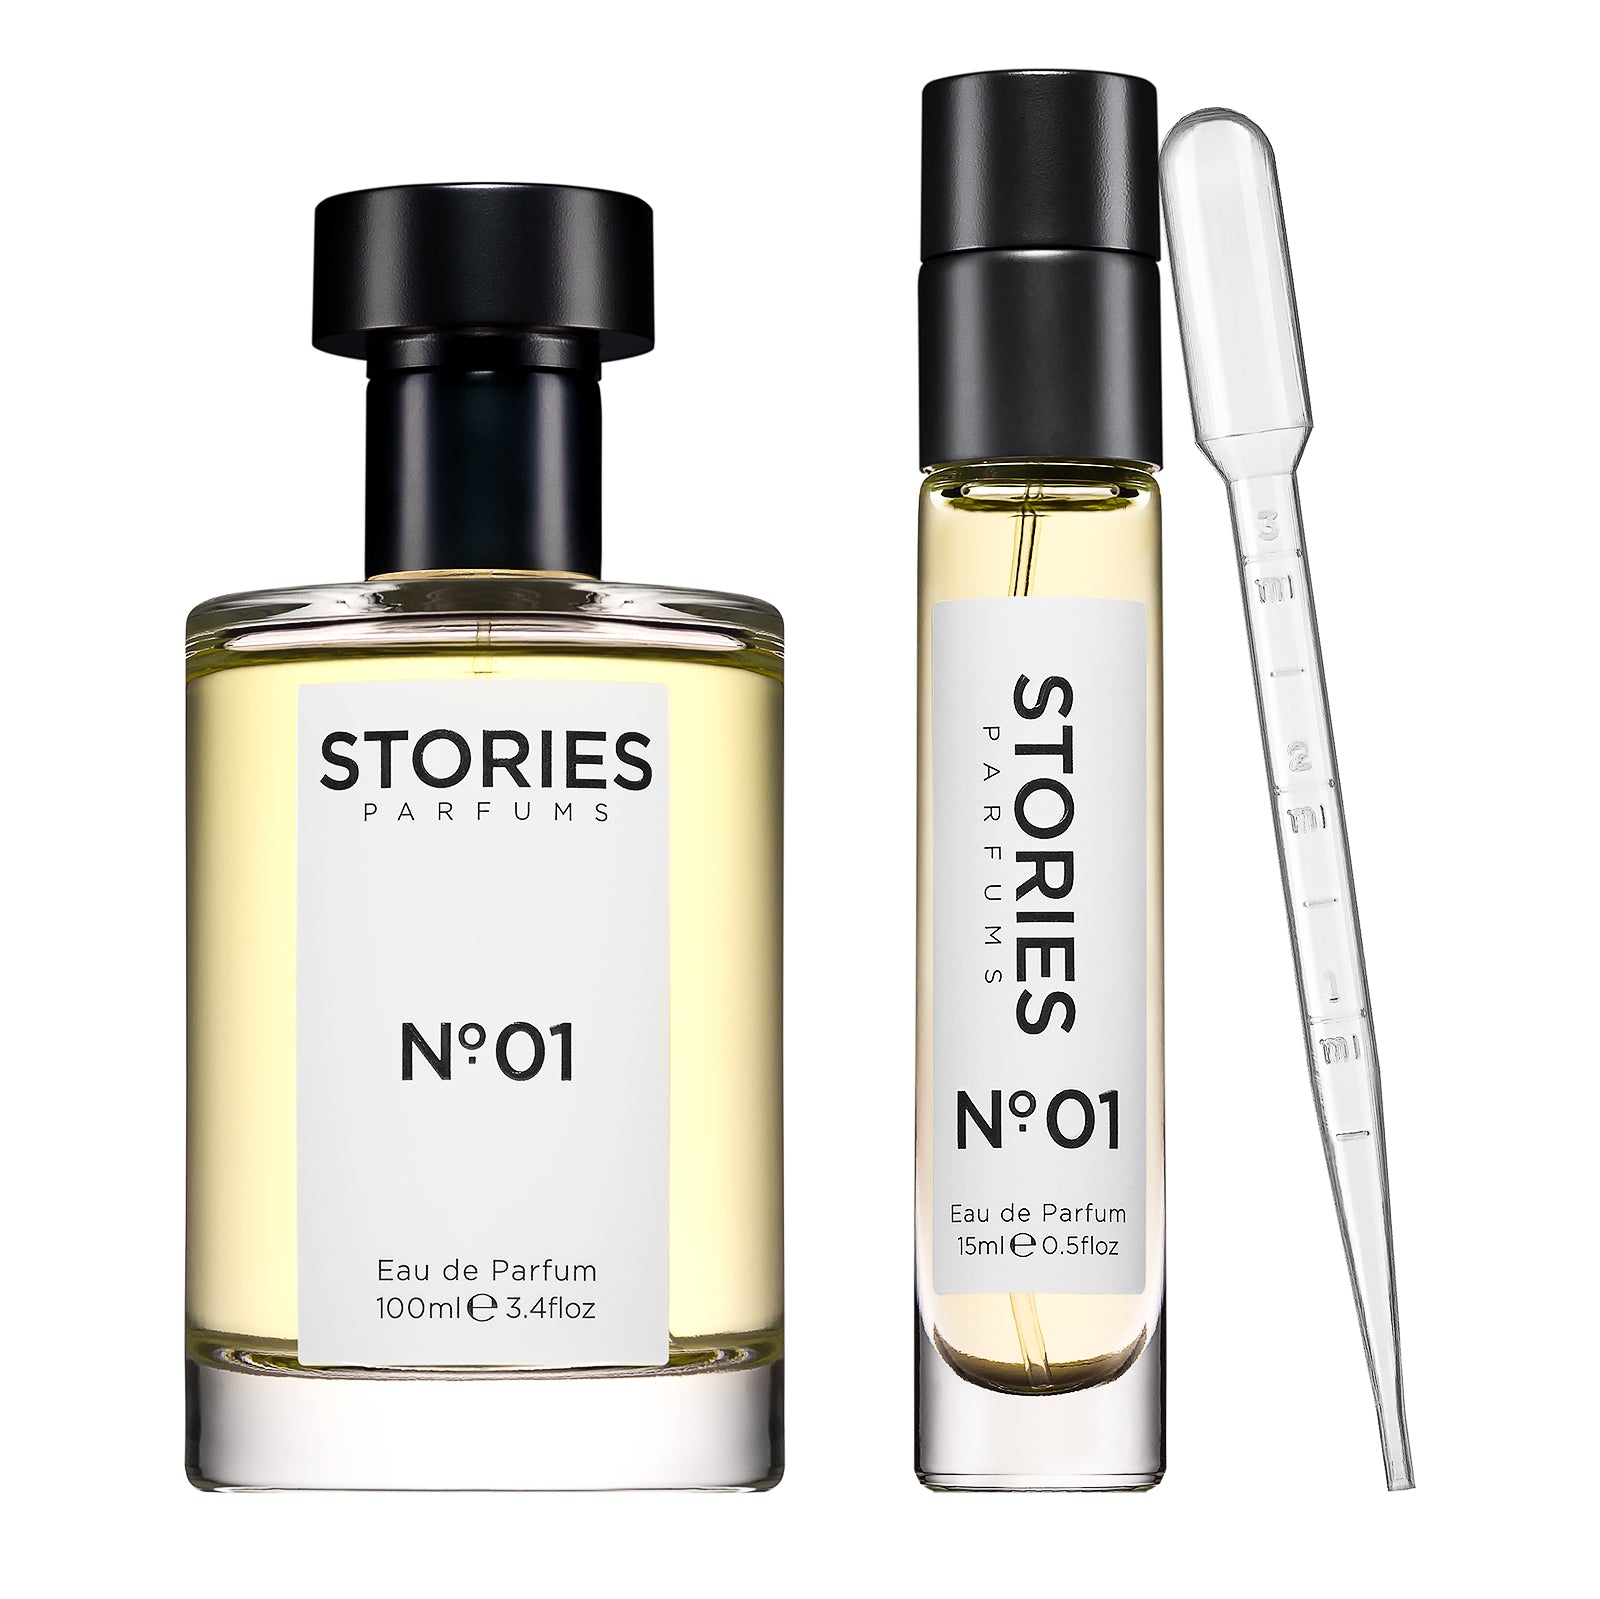 STORIES Nº.01 Eau de Parfum Contemporary Duo with Pipette